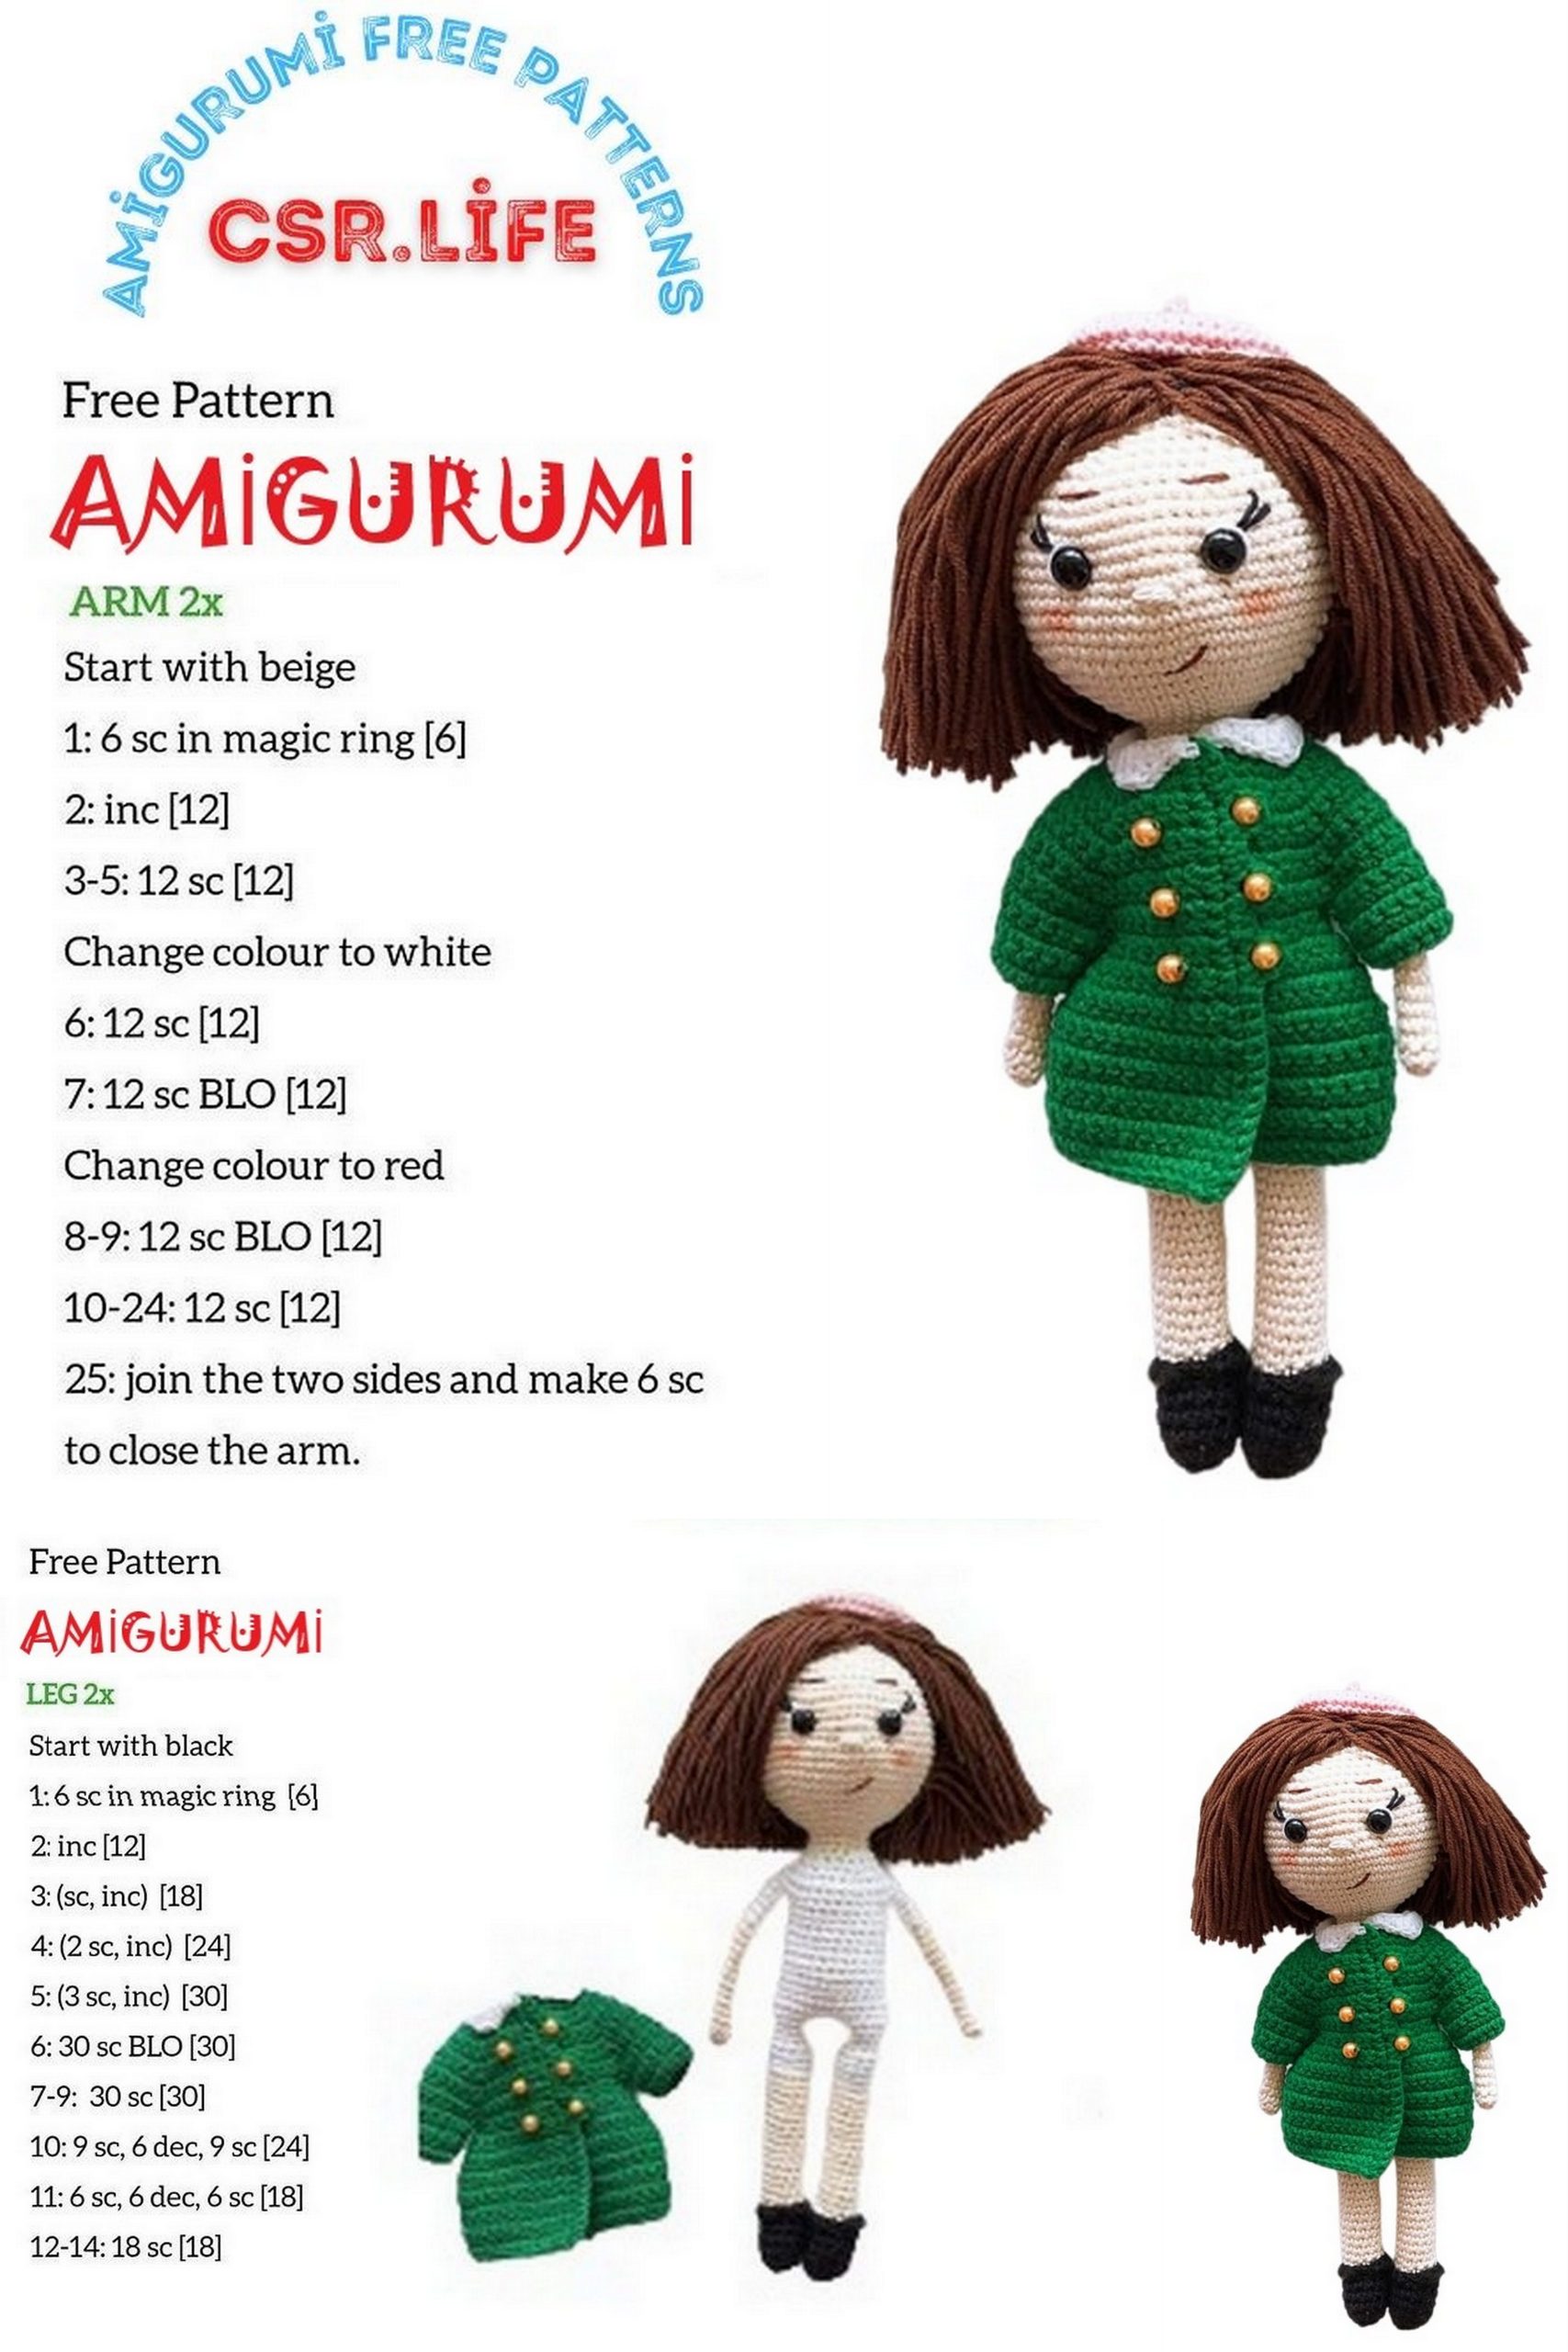 Teacher Doll Amigurumi Free Pattern – Csr.life